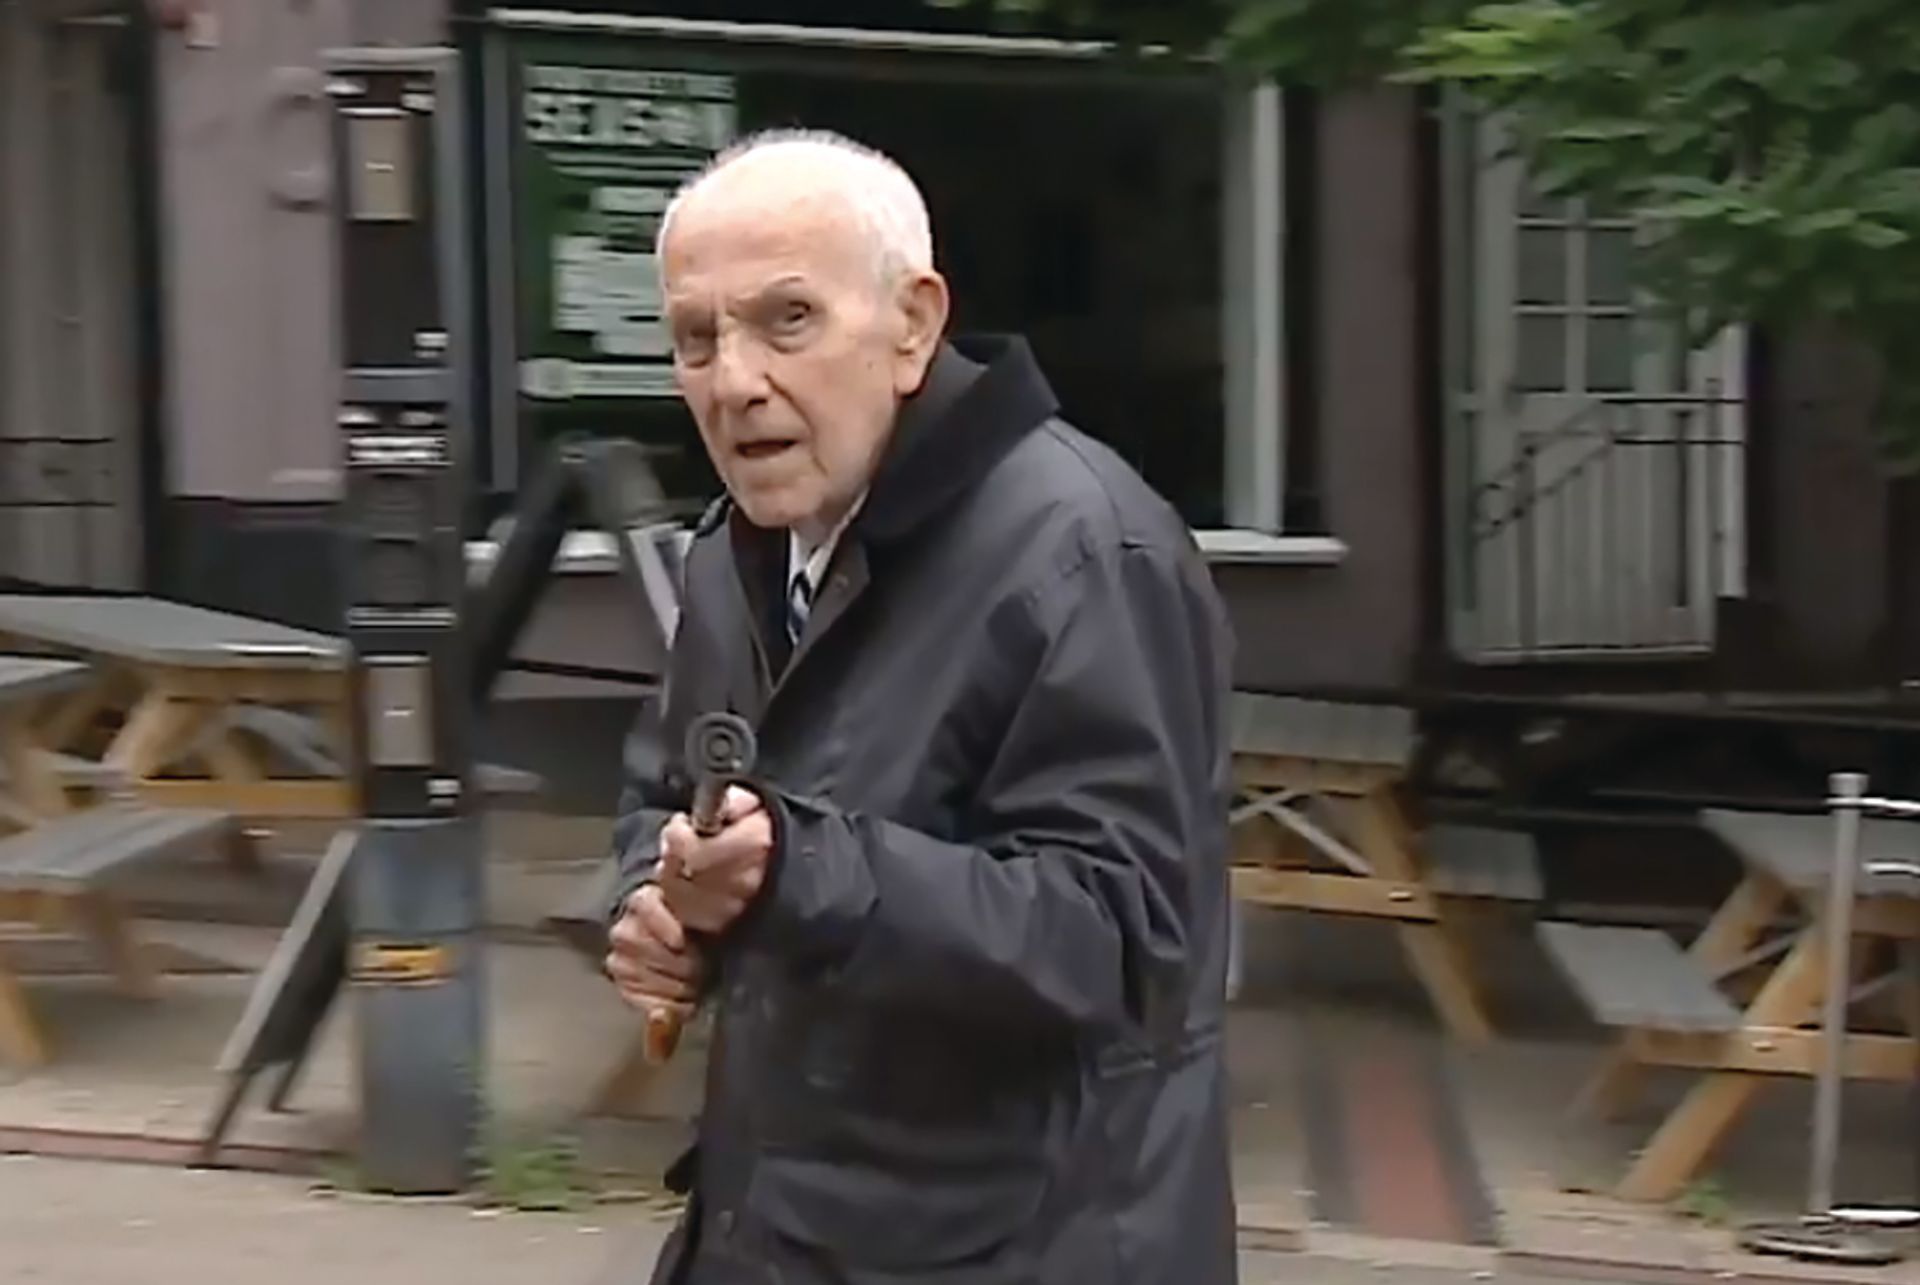 דס פיקרסגיל בדרכו לבית המשפט בלוטון הקיץ, שם קיבל עונש של שש שנים על חלקו בגניבת חפצי ערך מנשים מבוגרות

 צילום: ITV News